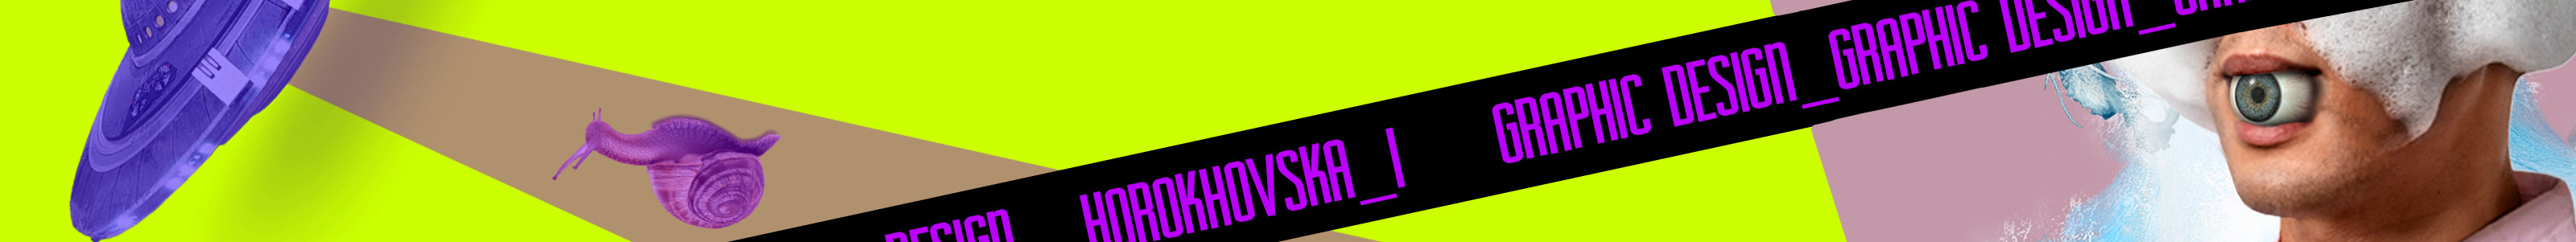 Ira Horokhovska's profile banner